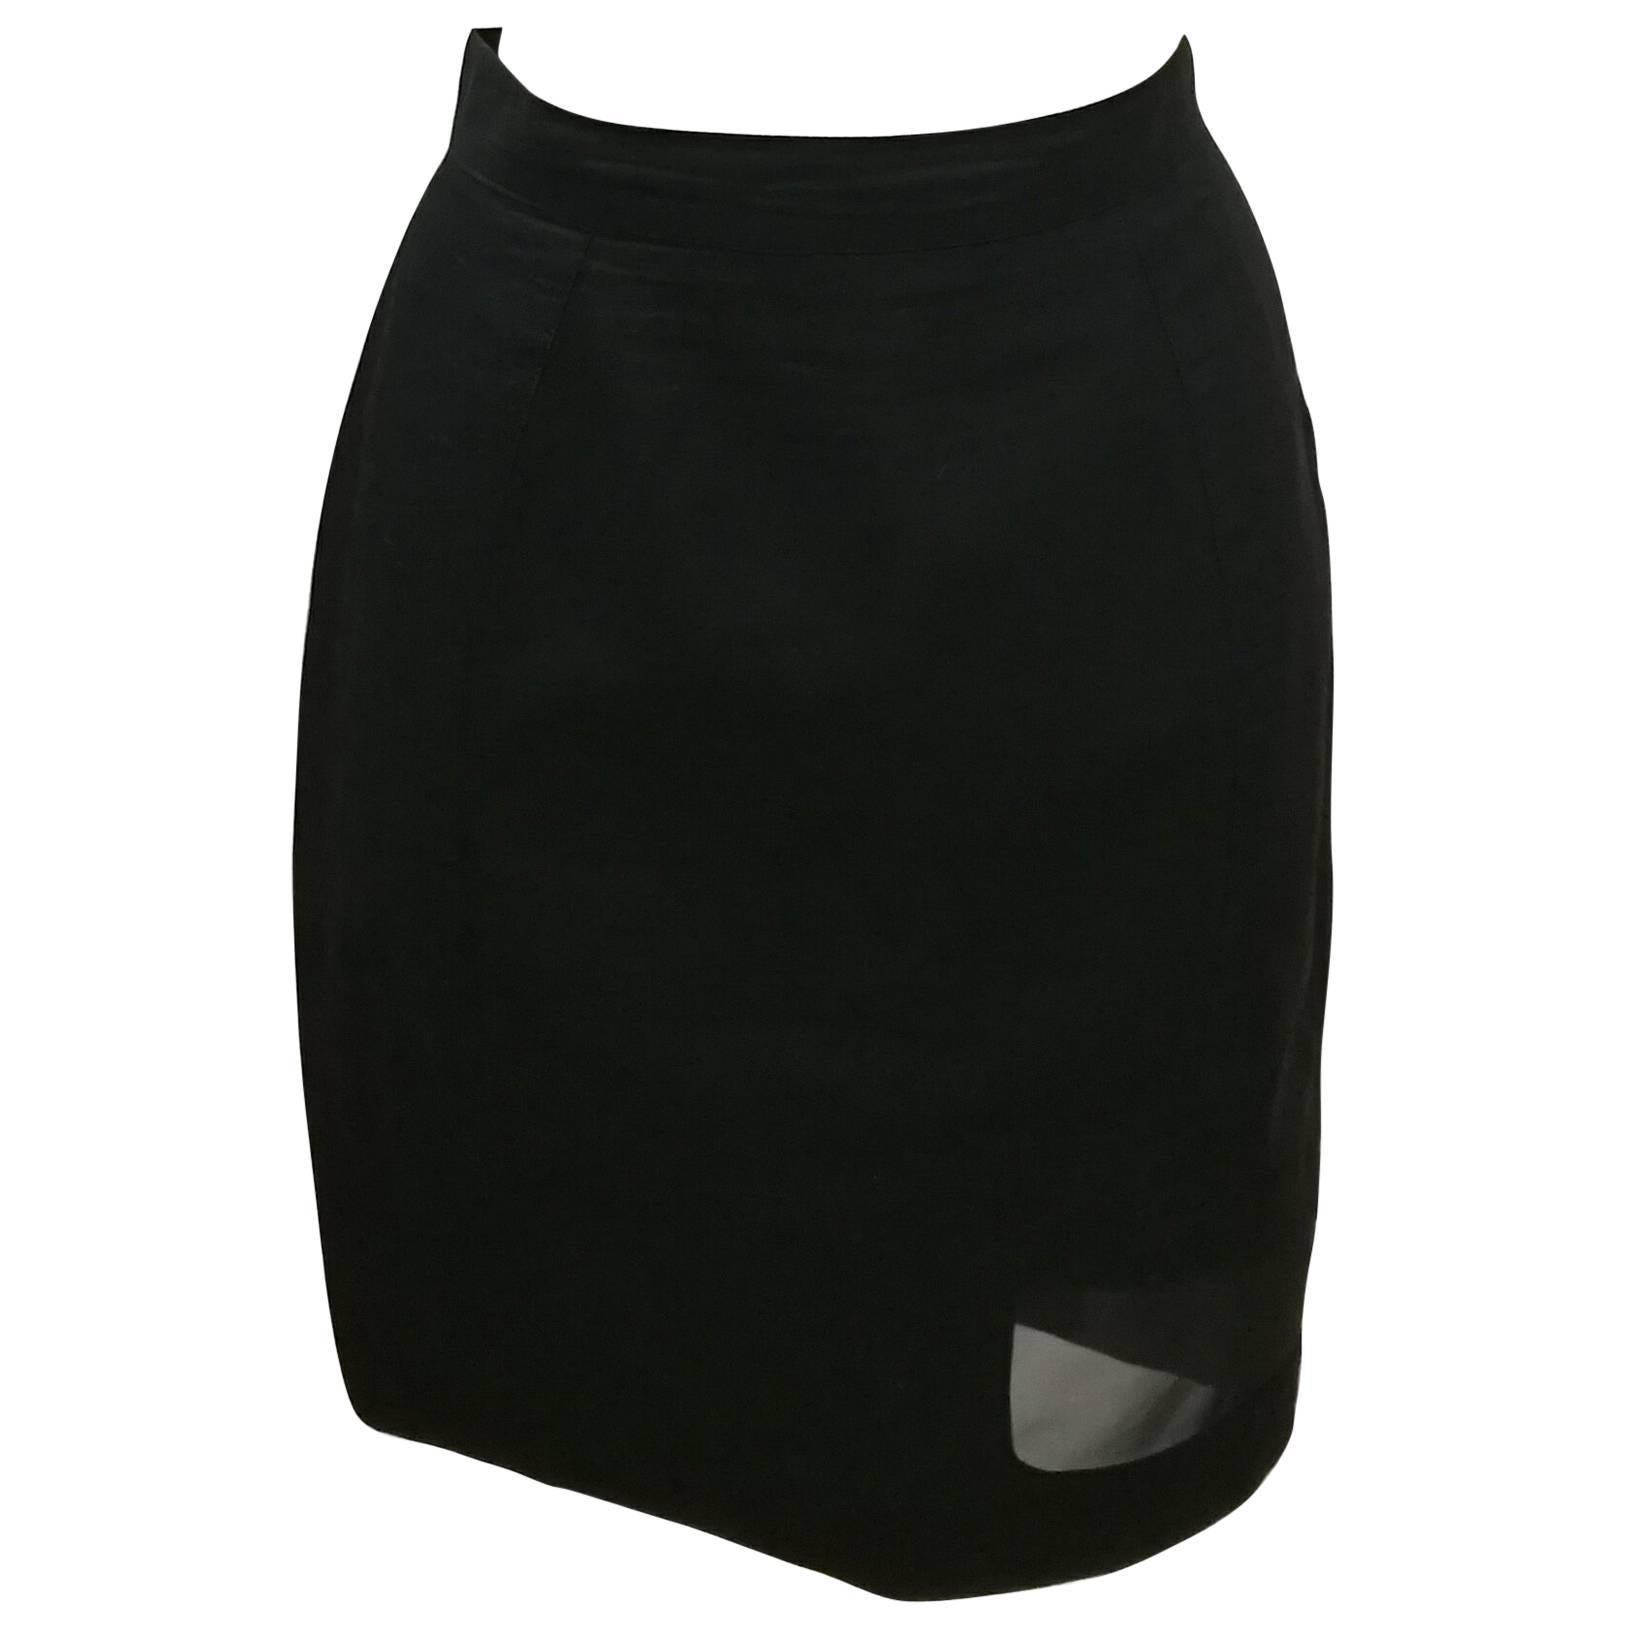 Thierry Mugler Activ Linen Black Skirt with Net